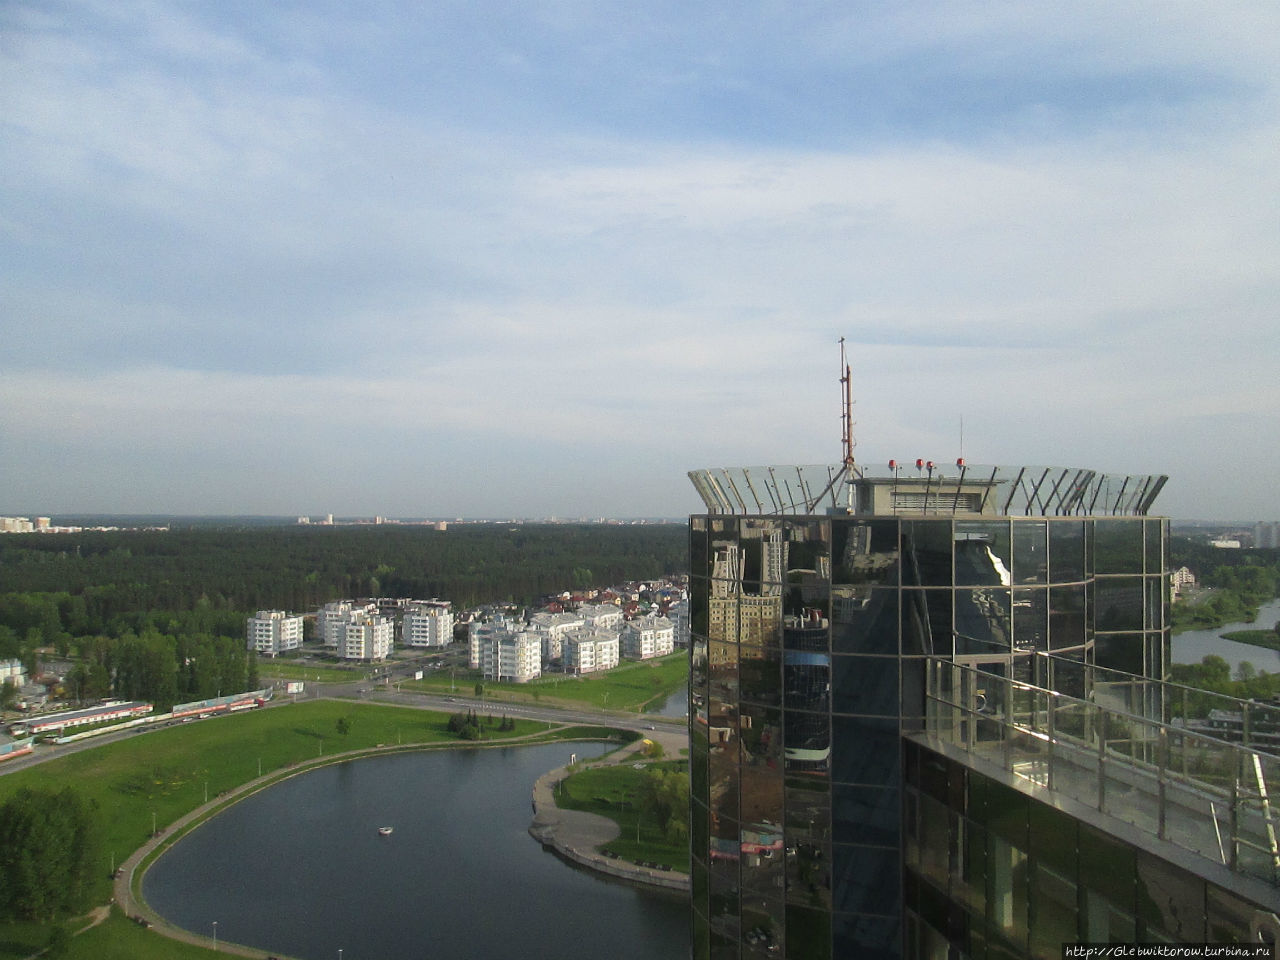 Панорама города со смотровой площадки Минск, Беларусь